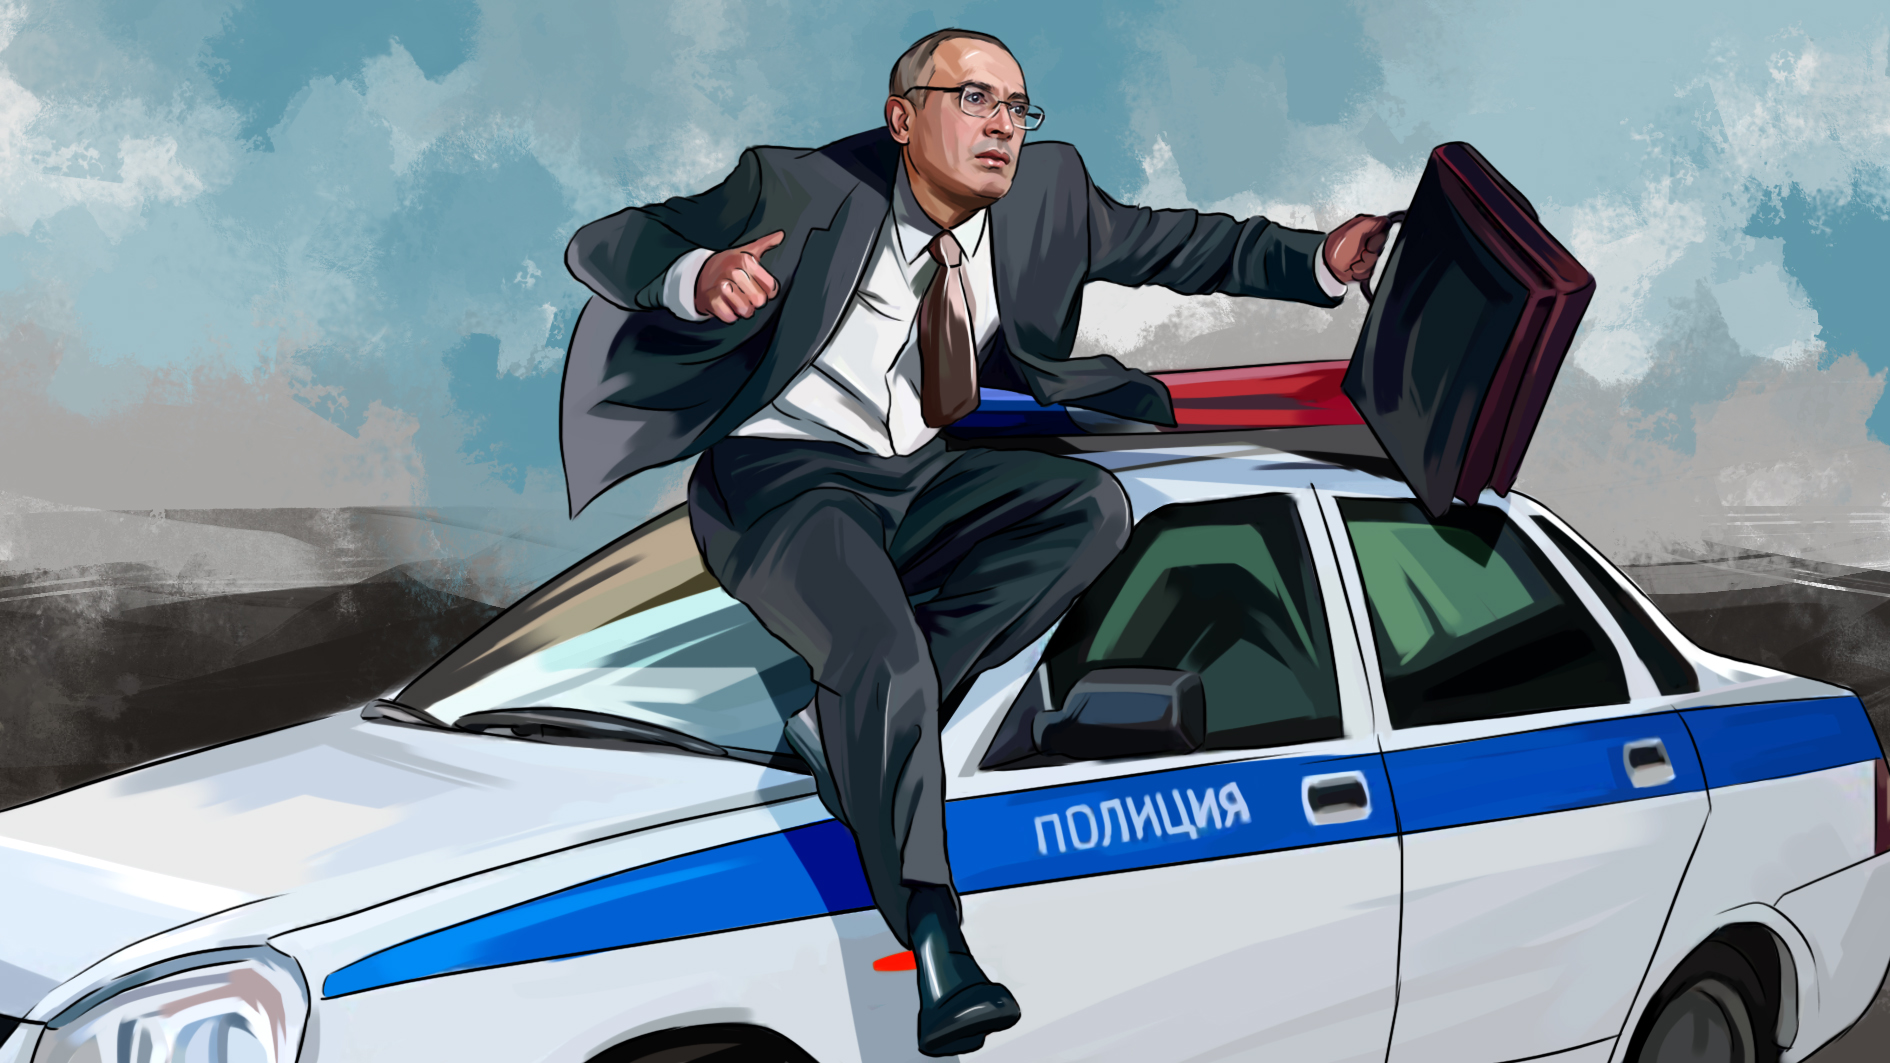 Шпионские игры: Ходорковского тайно привезли в Россию?